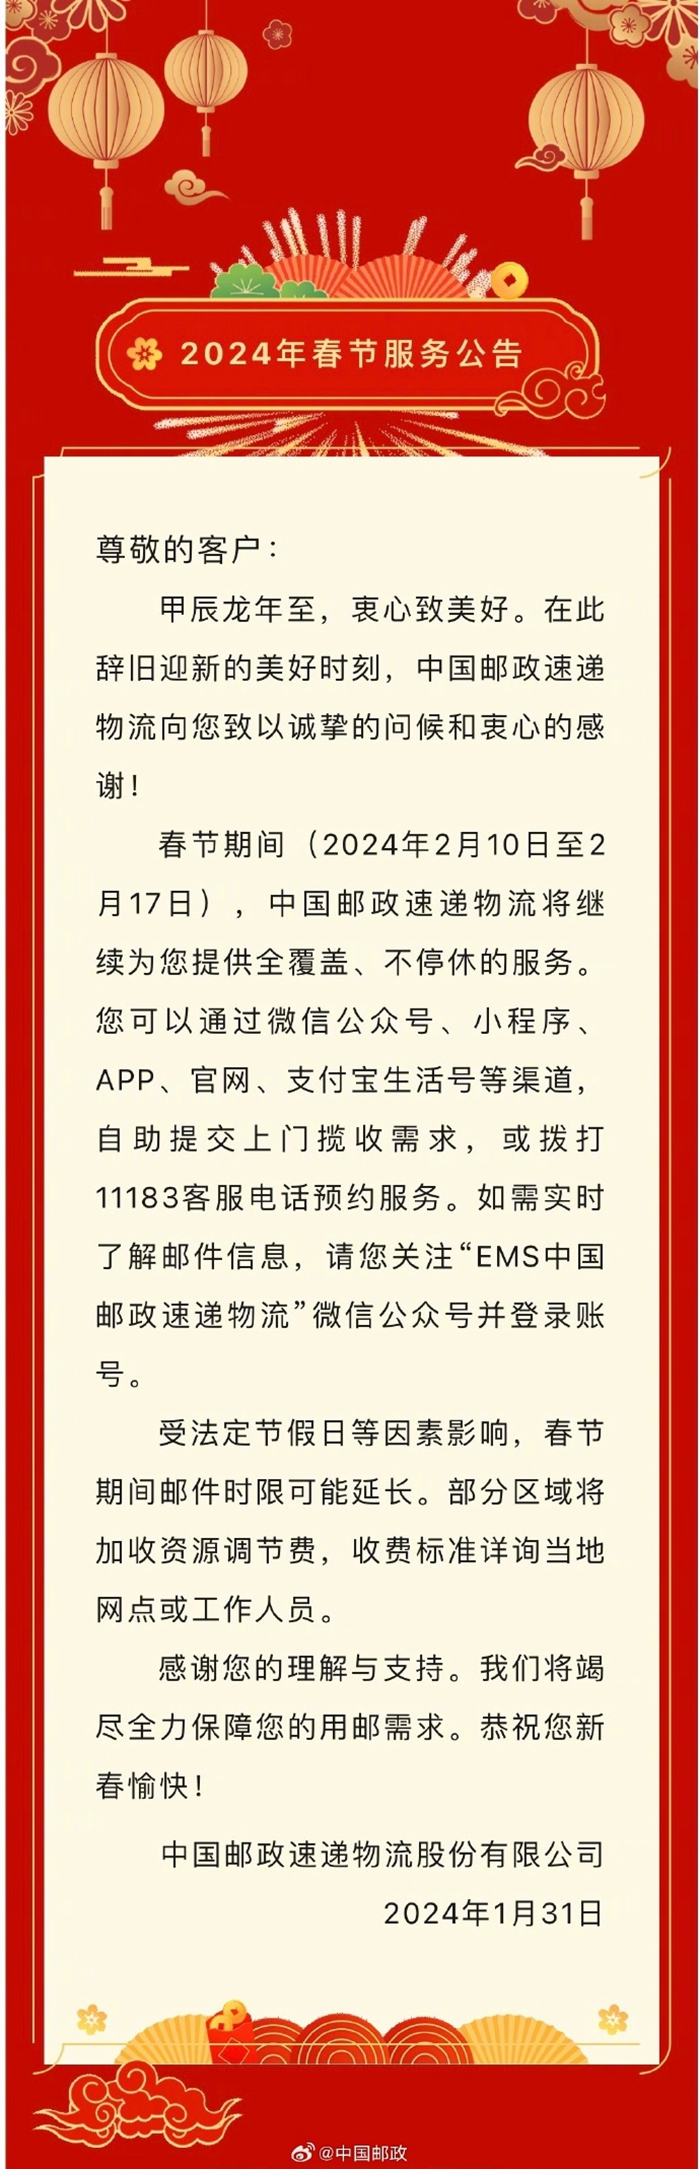 中国邮政微博截图�。将为快递员通过安排年夜饭、不过记者从多家快递企业获悉
，</p><p style=